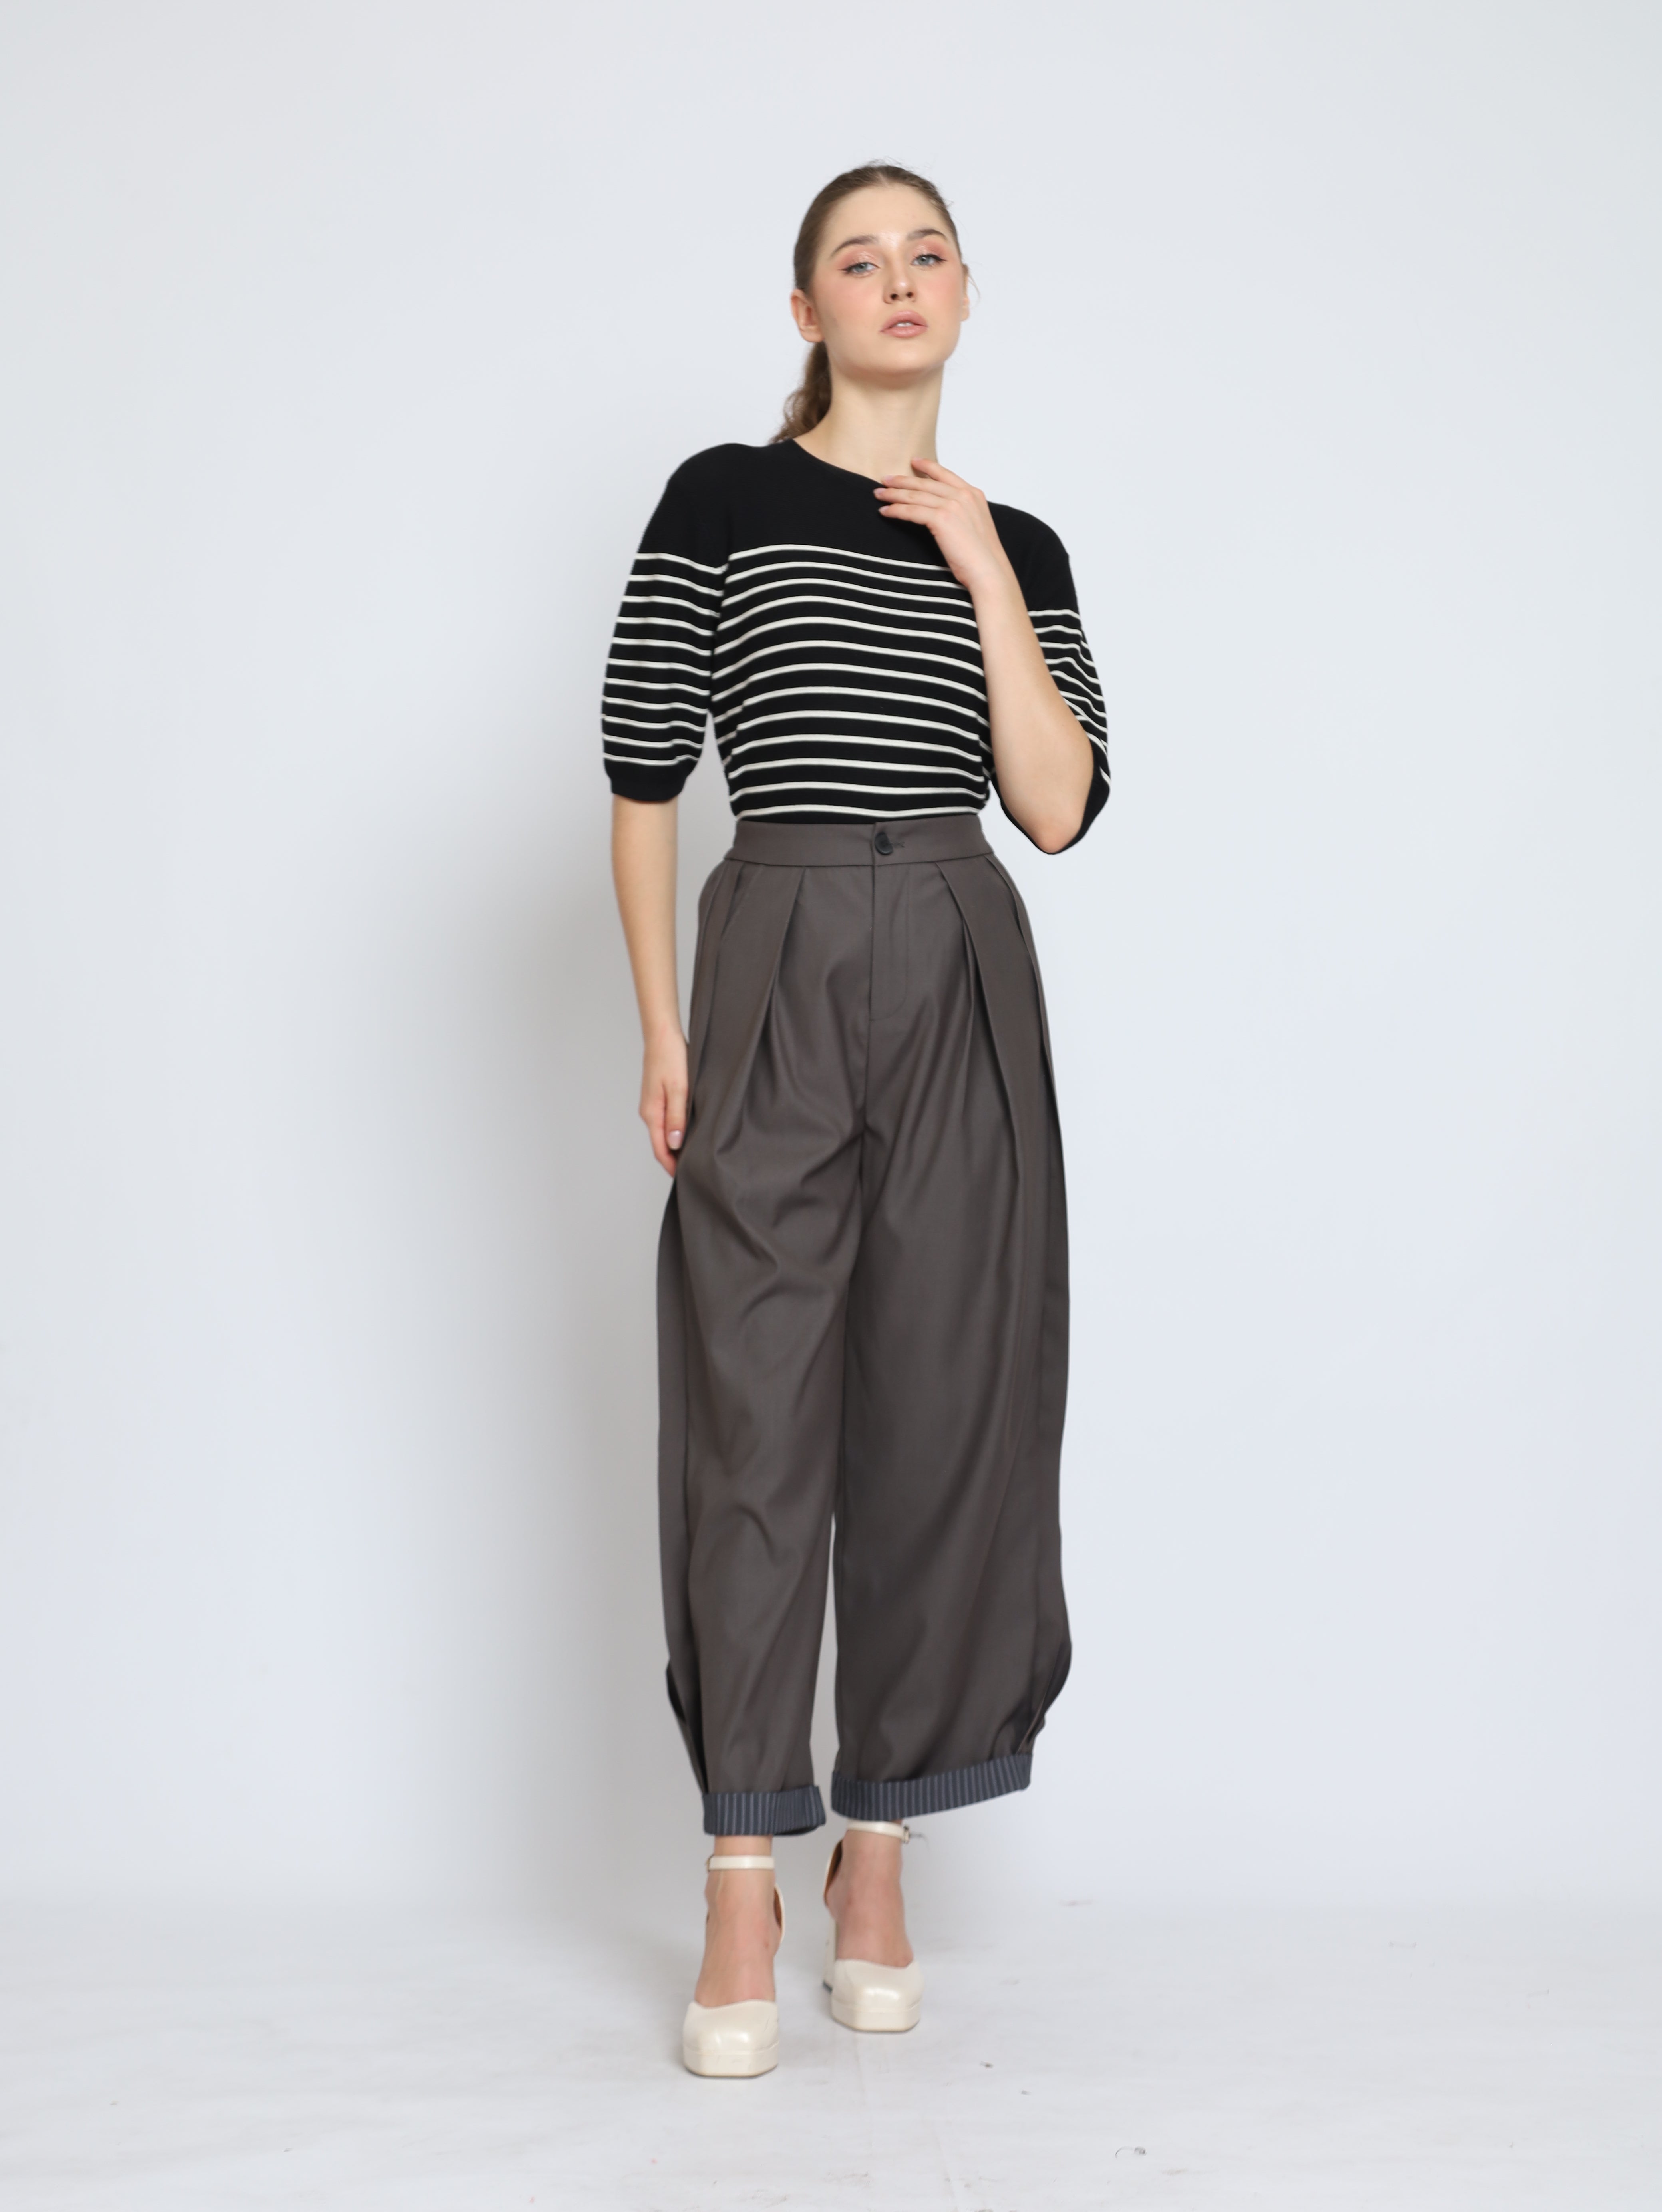 Bloom et Cotton BC Stripes Knit/ Yoji Pants